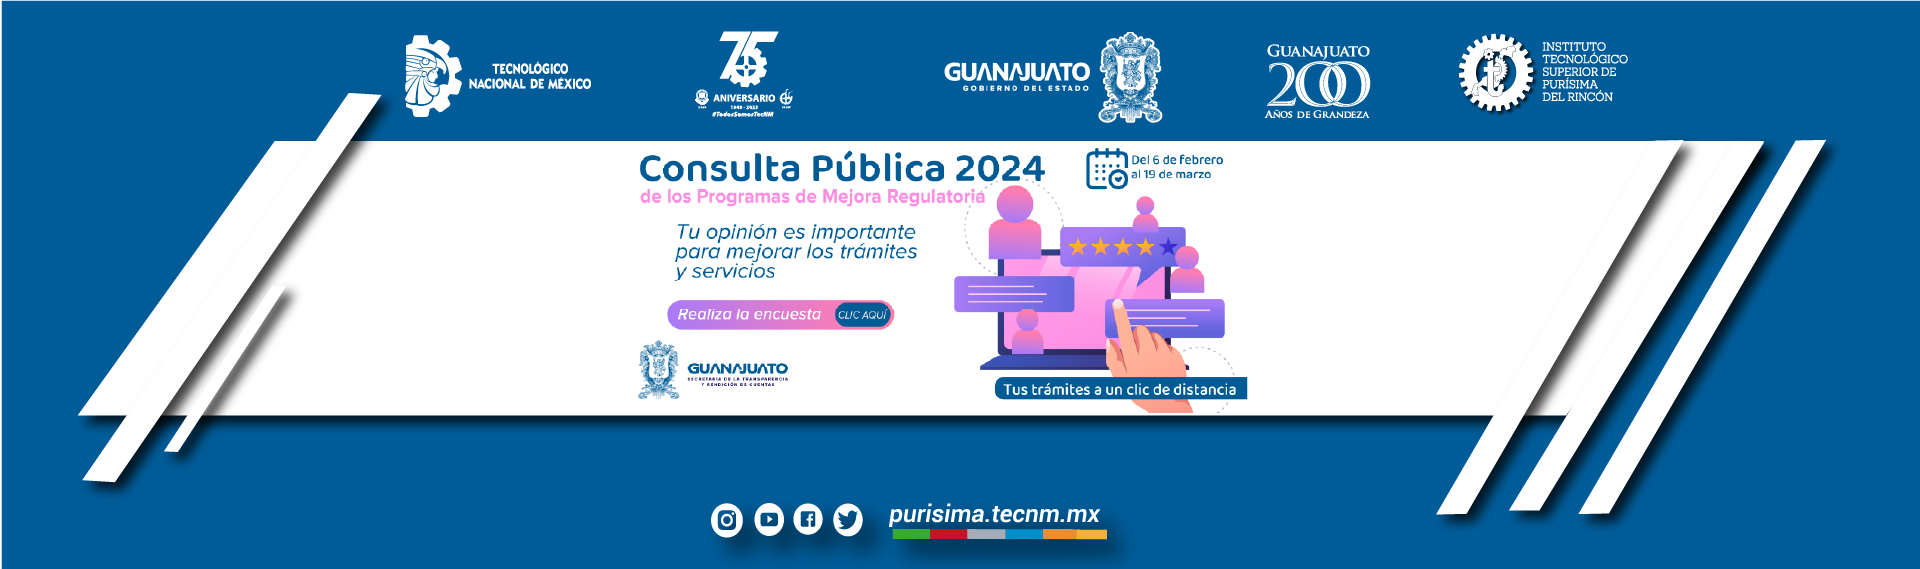 Consulta Pública 2024